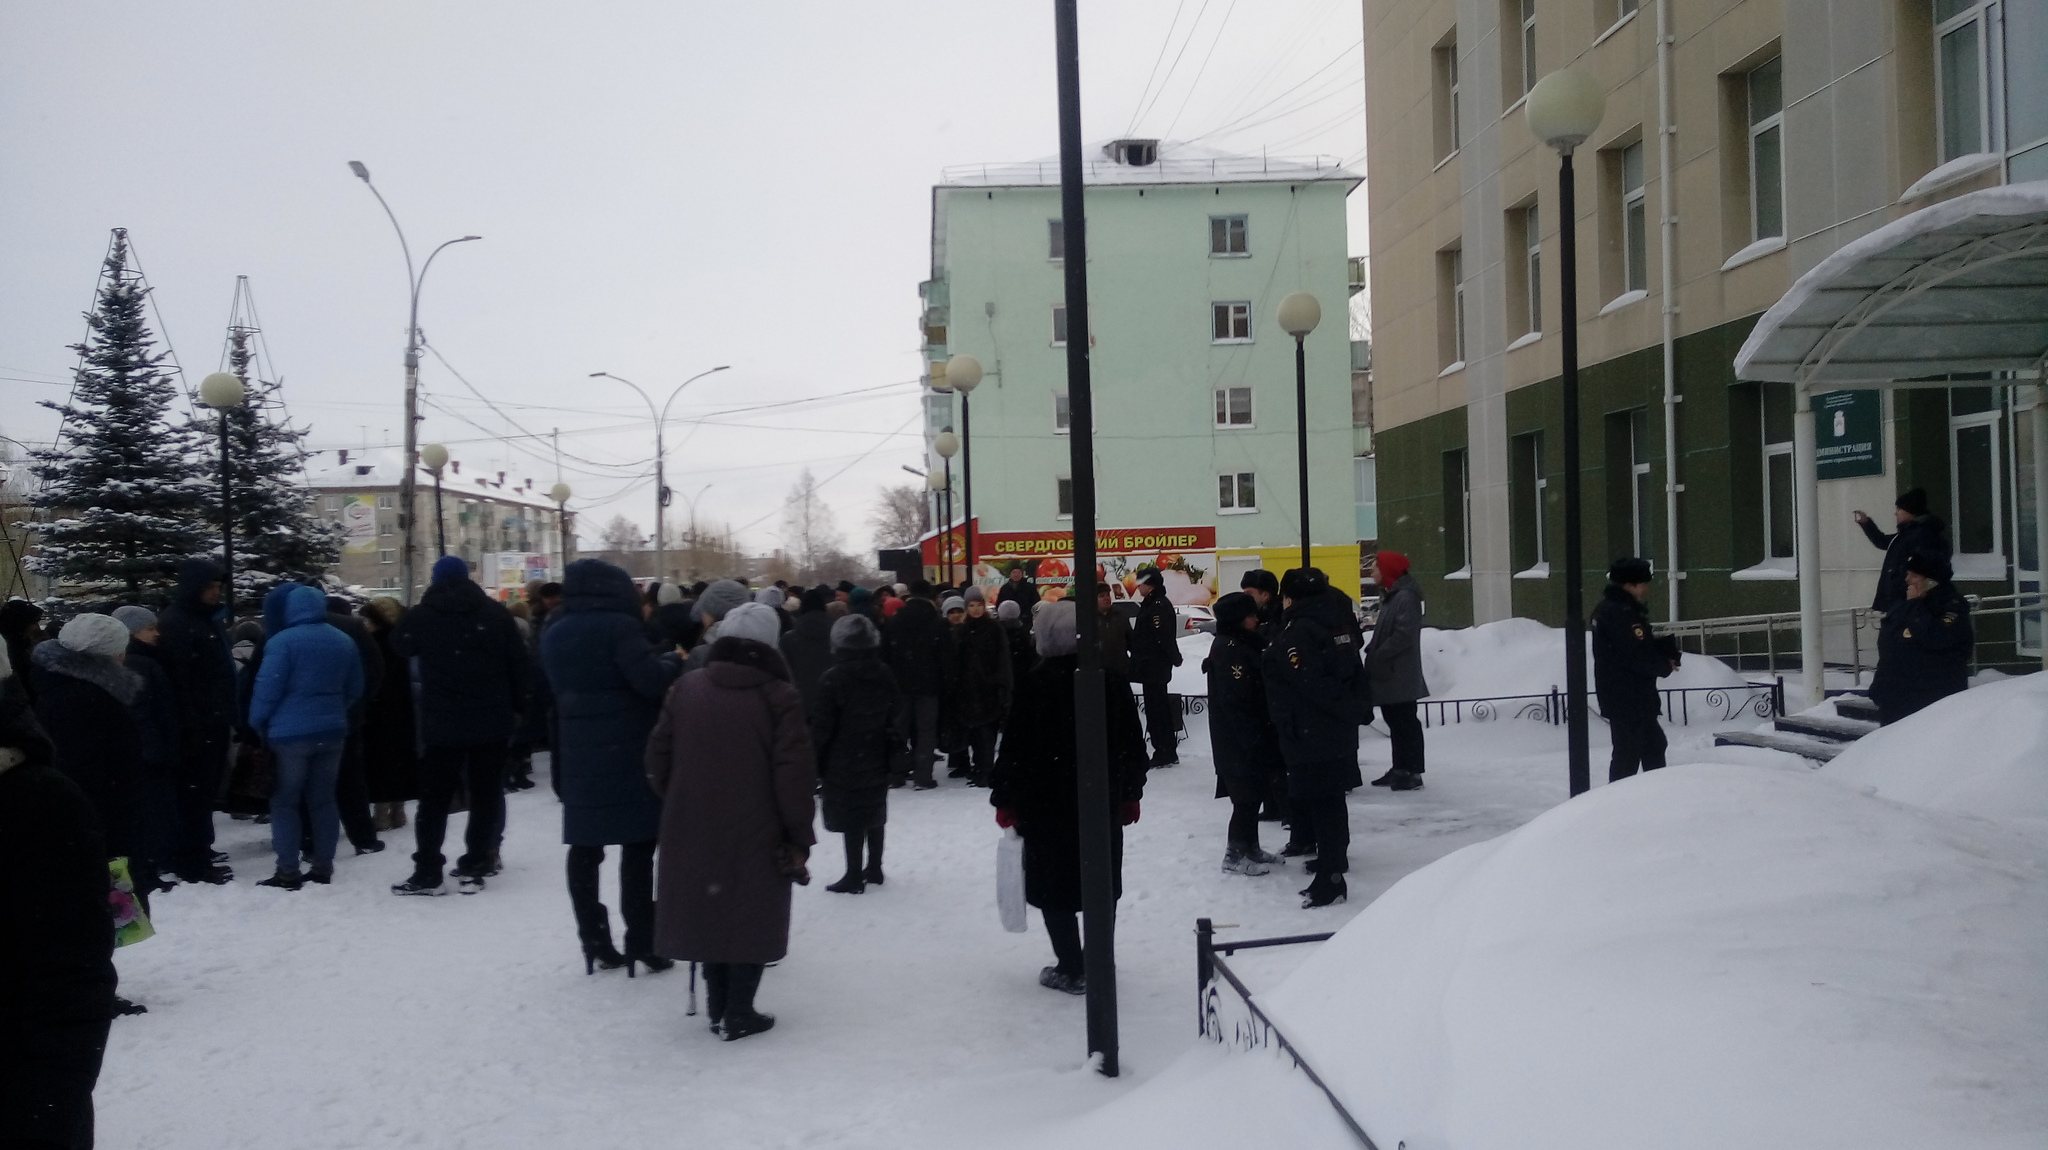 Власти Серова рассказали, как организовать митинг. И предупредили об уголовной ответственности за несанкционированный протест 